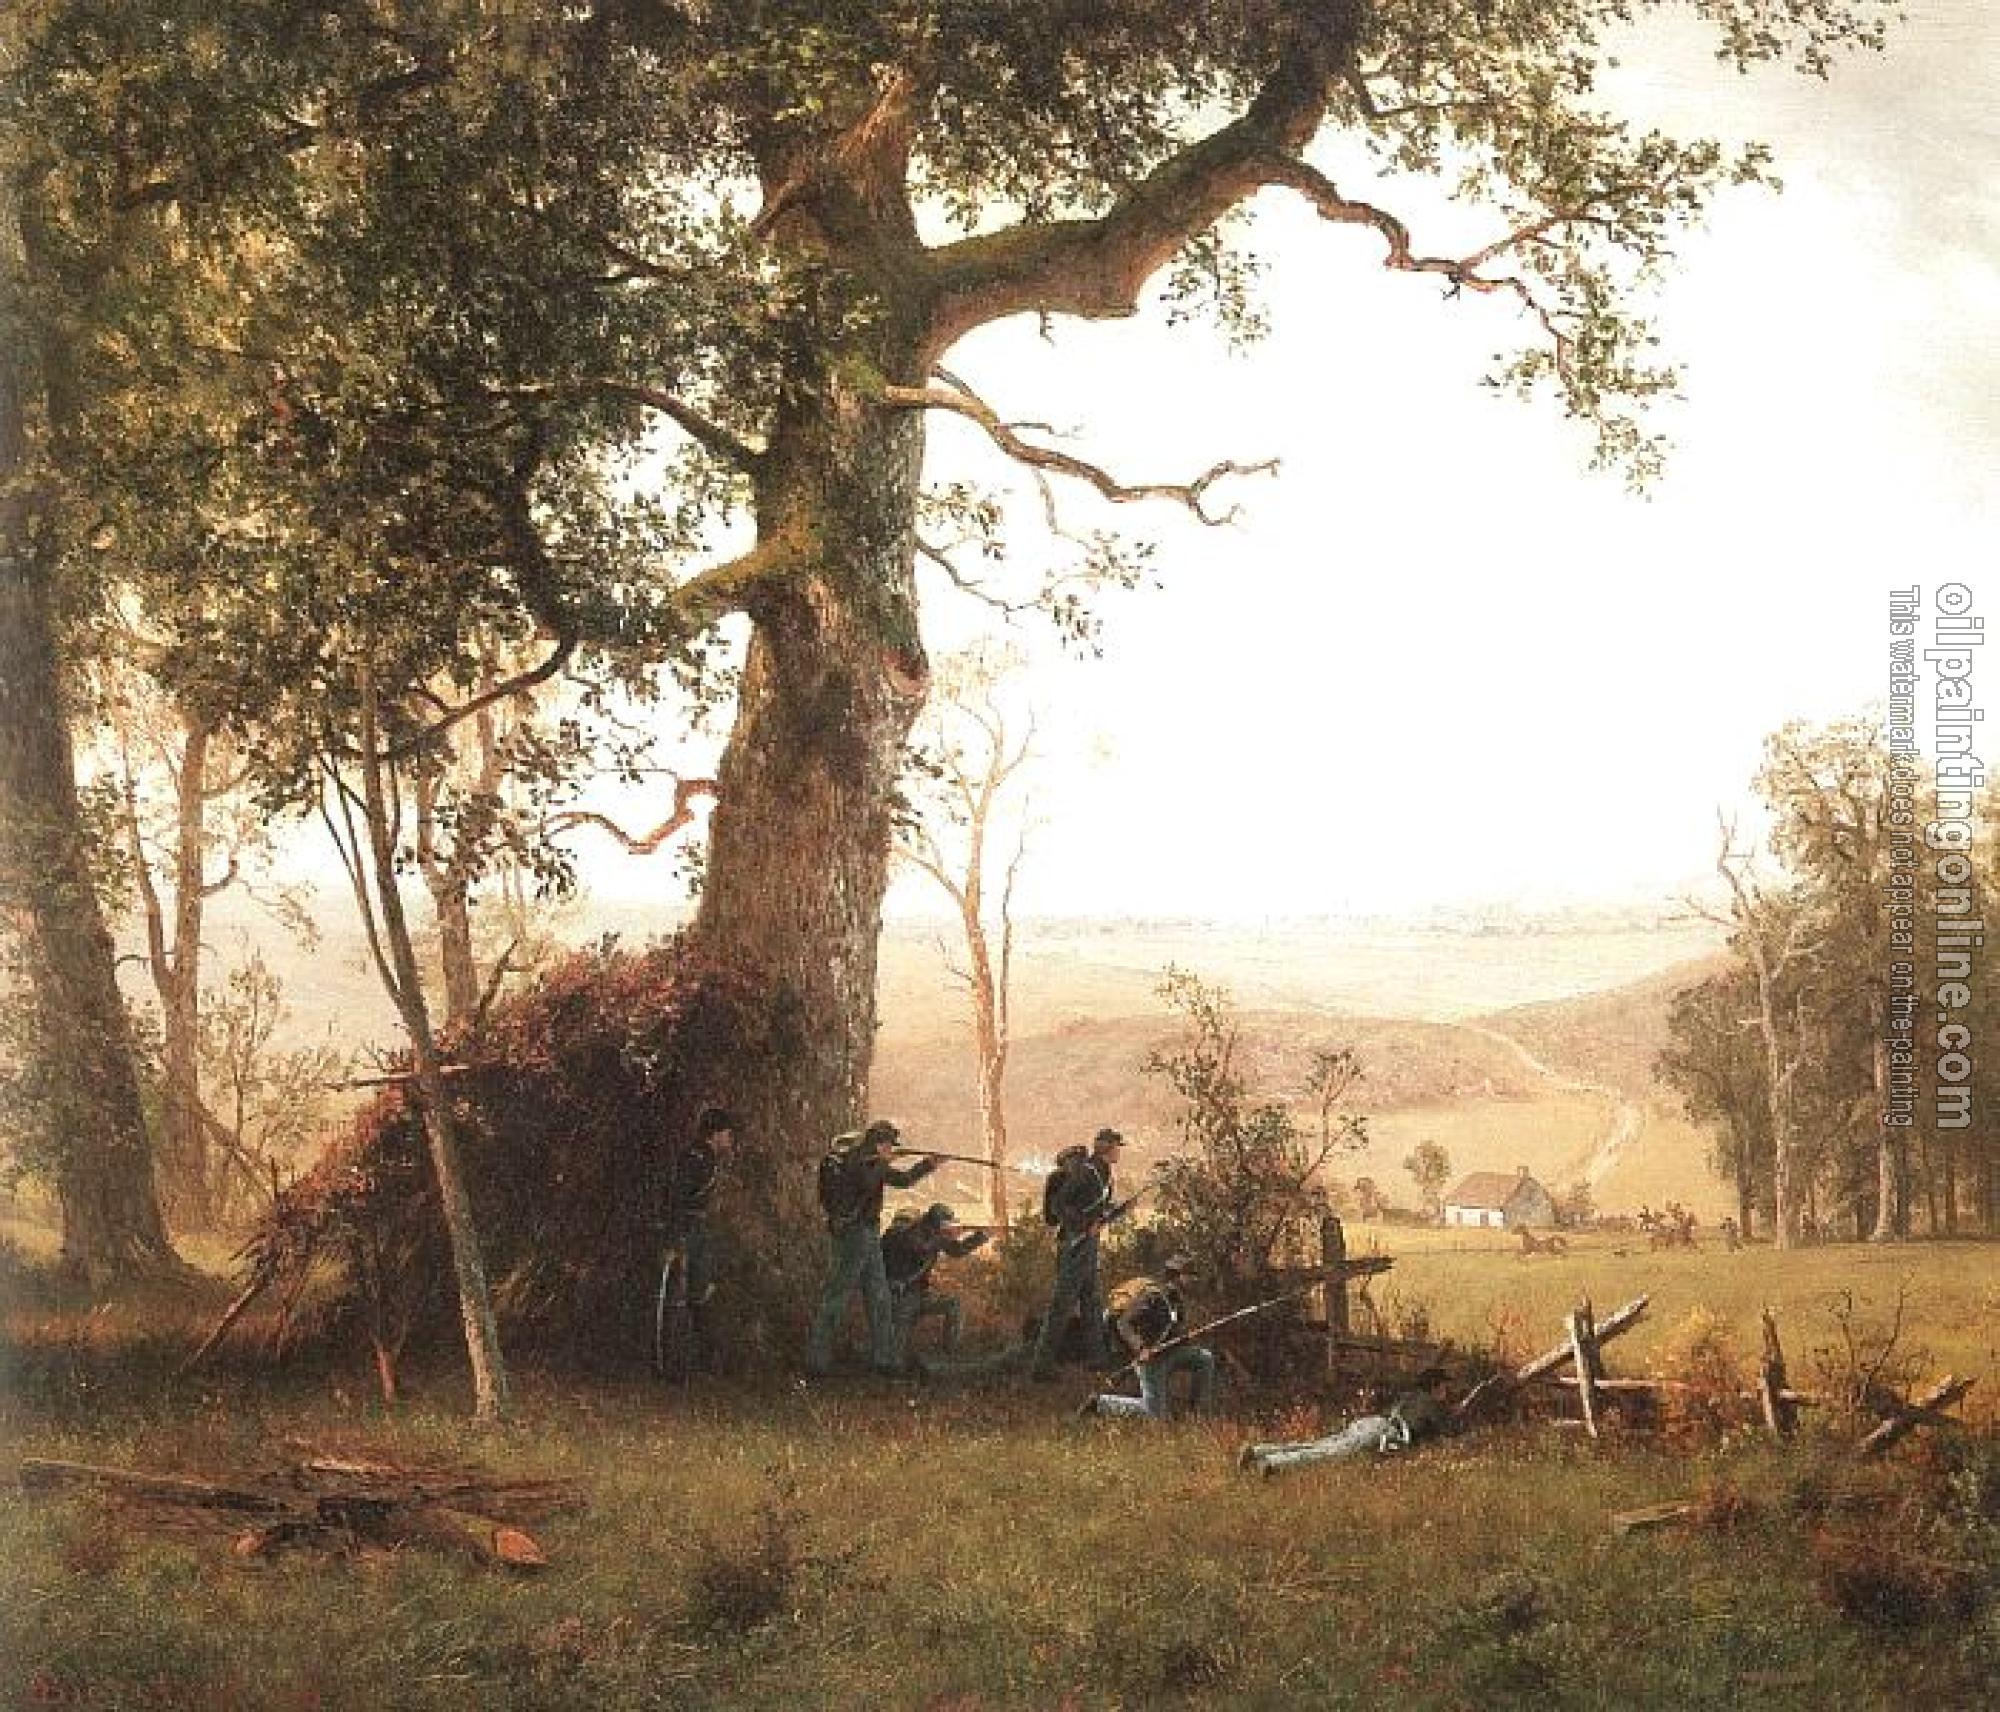 Bierstadt, Albert - Guerrilla Warfare (Picket Duty in Virginia)